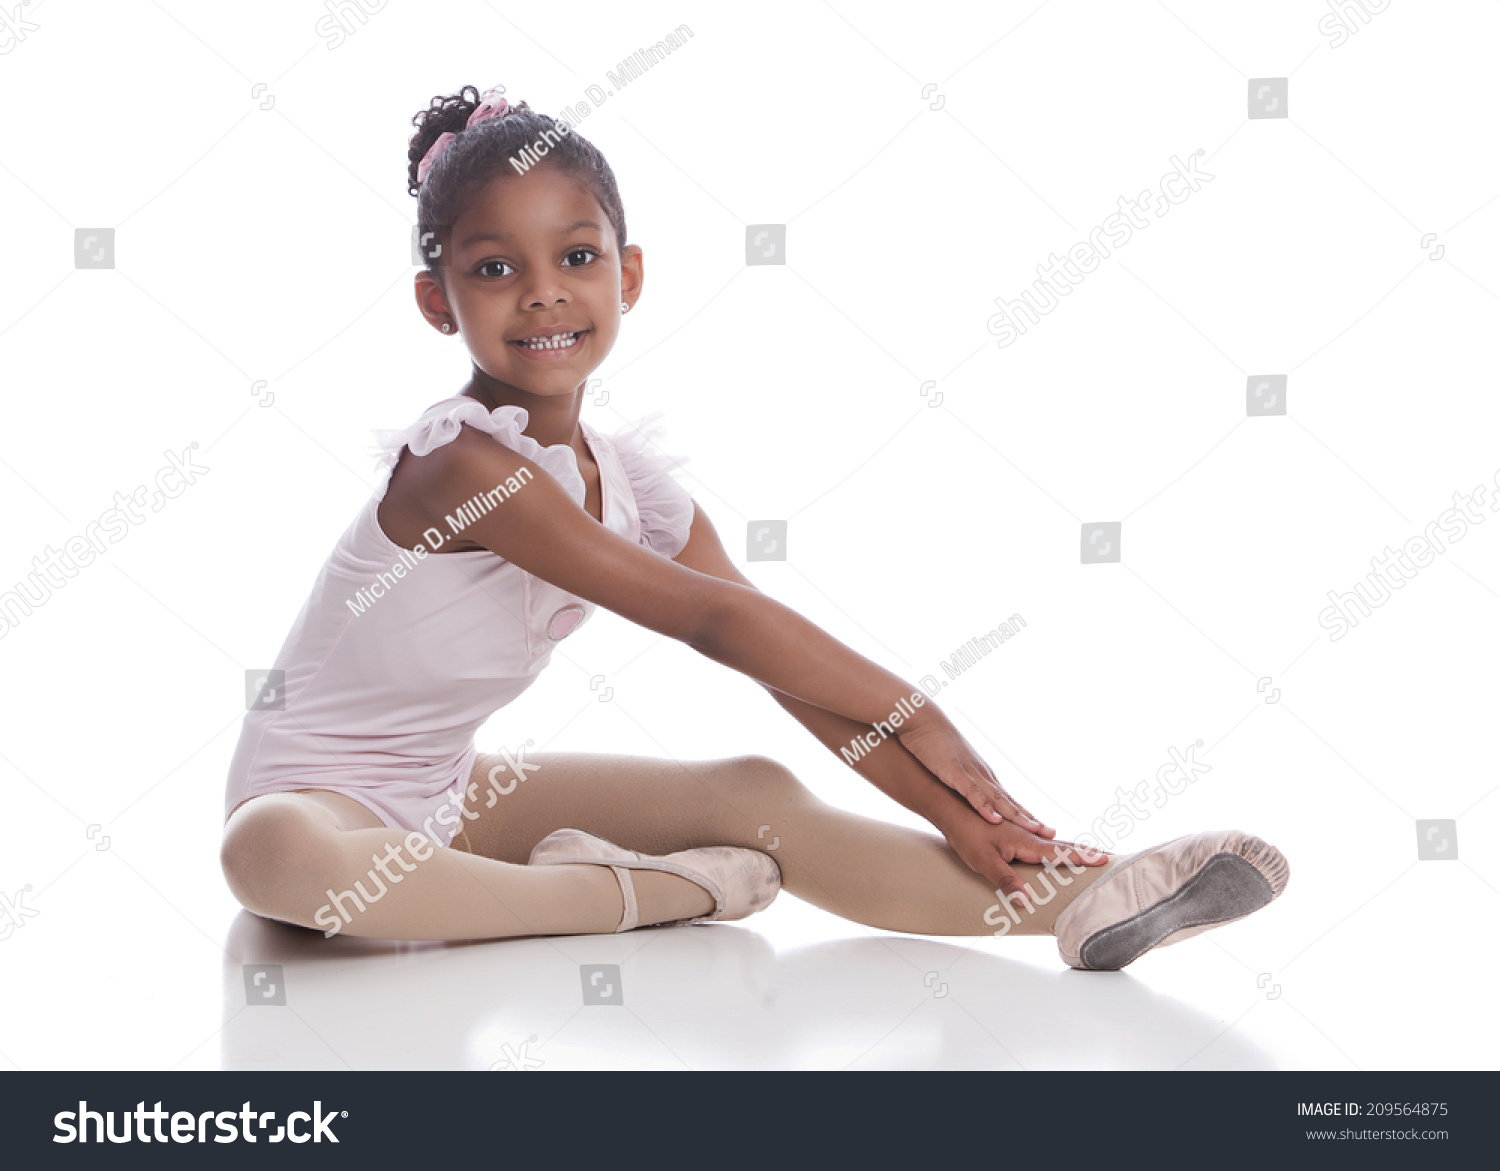 little girl ballerina slippers